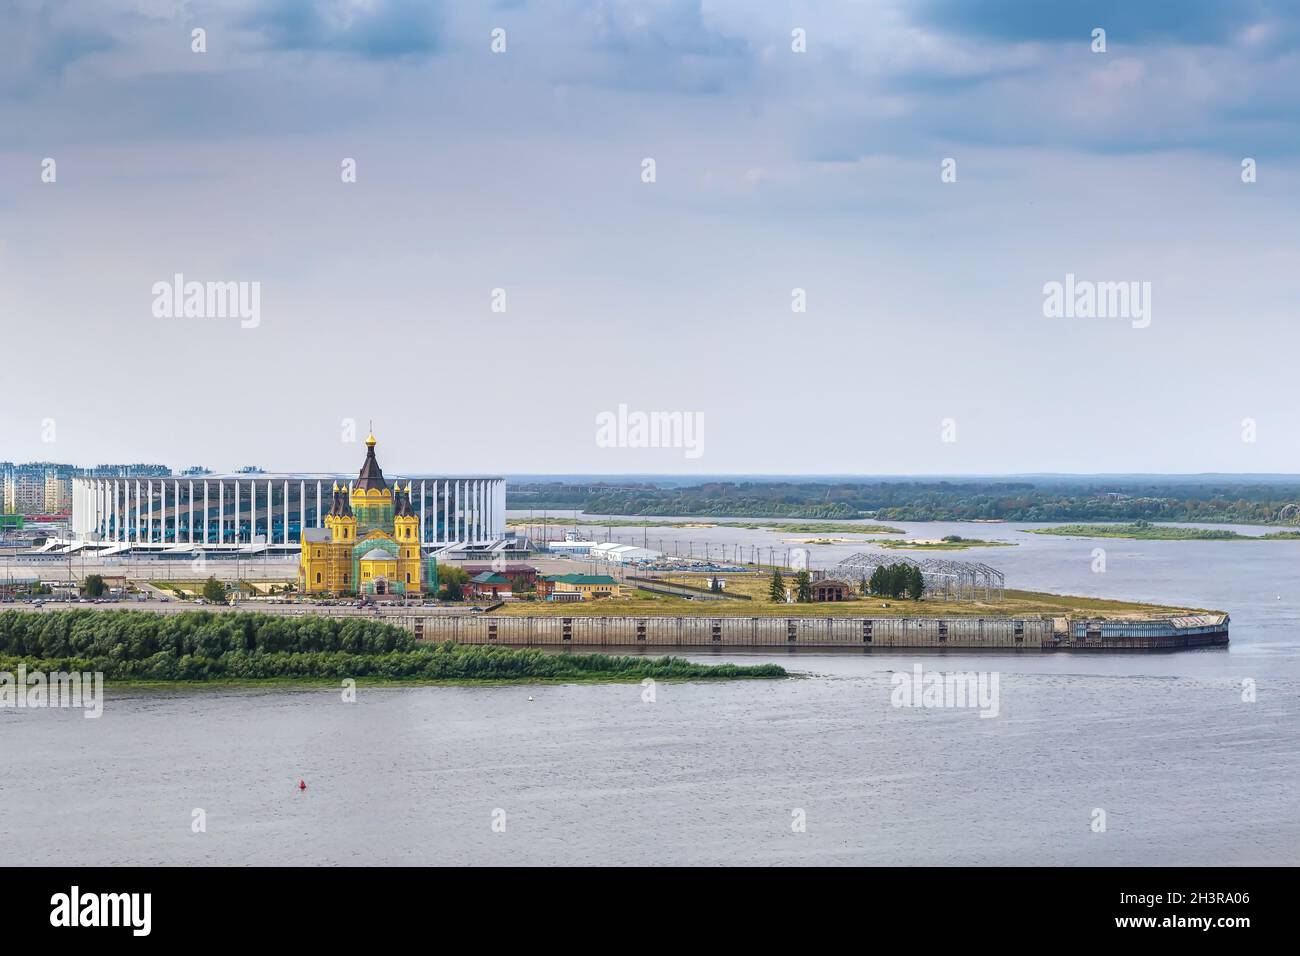 The confluence of the Oka and Volga rivers, Nizhny Novgorod, Russia Stock Photo